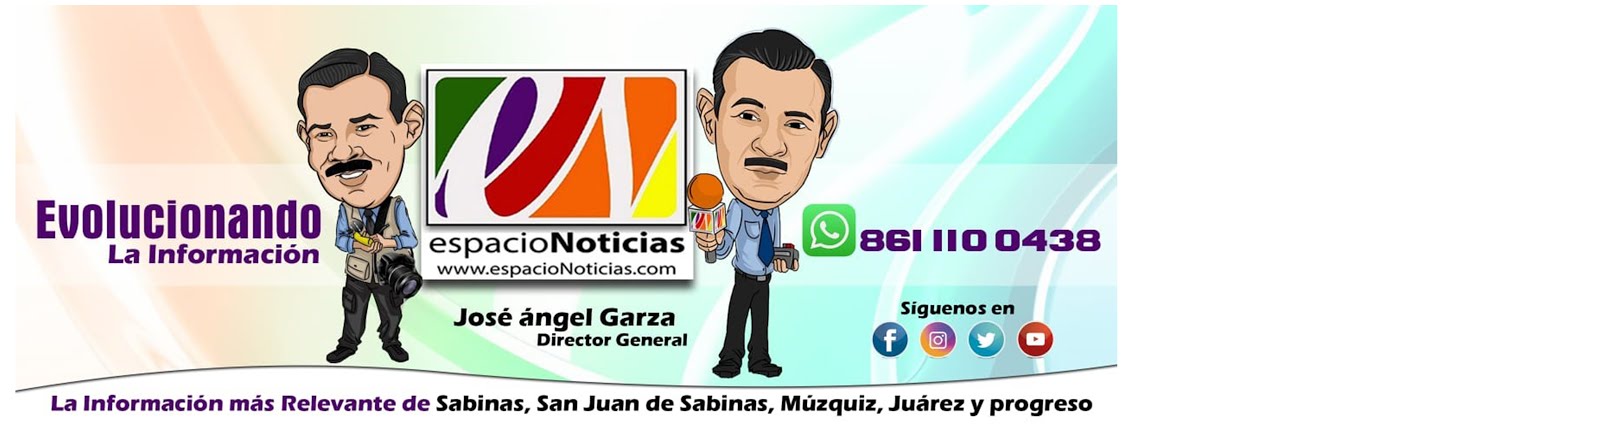 www.espacioNoticias.com